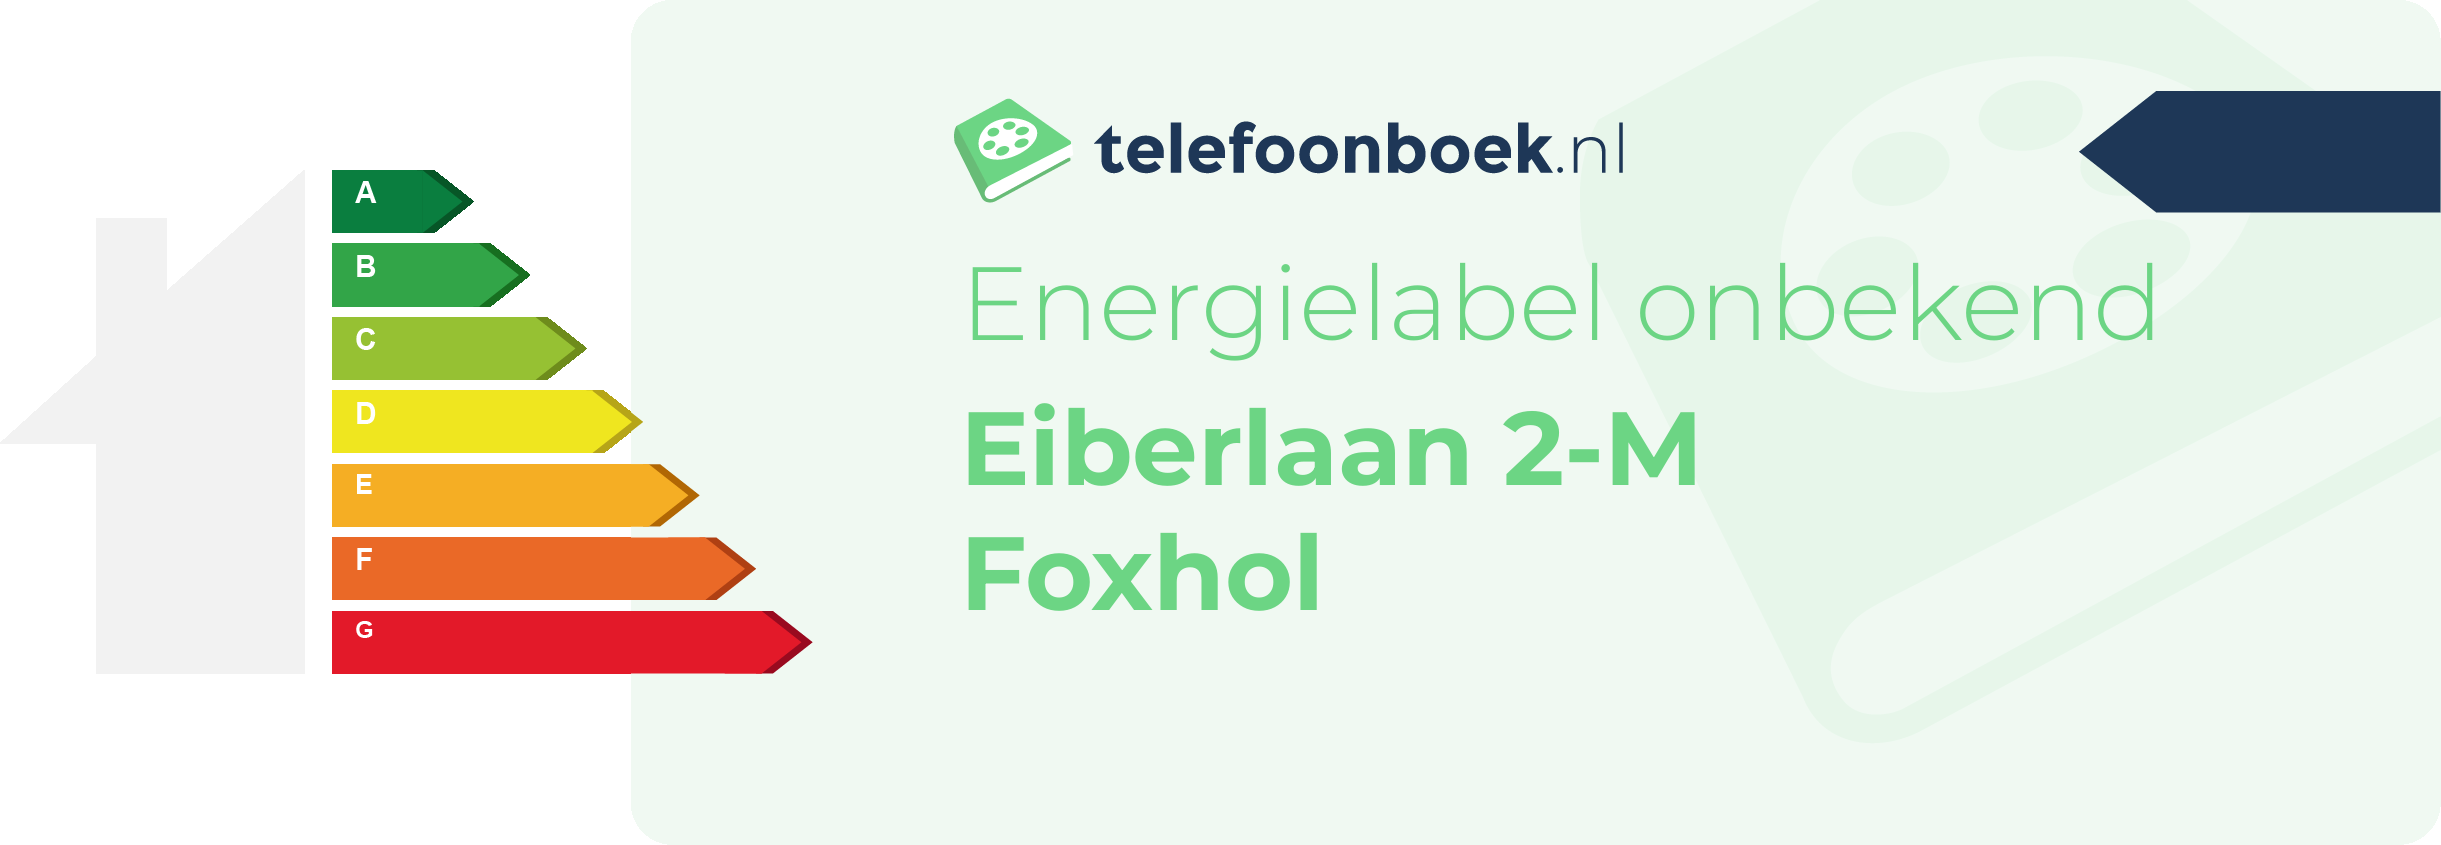 Energielabel Eiberlaan 2-M Foxhol